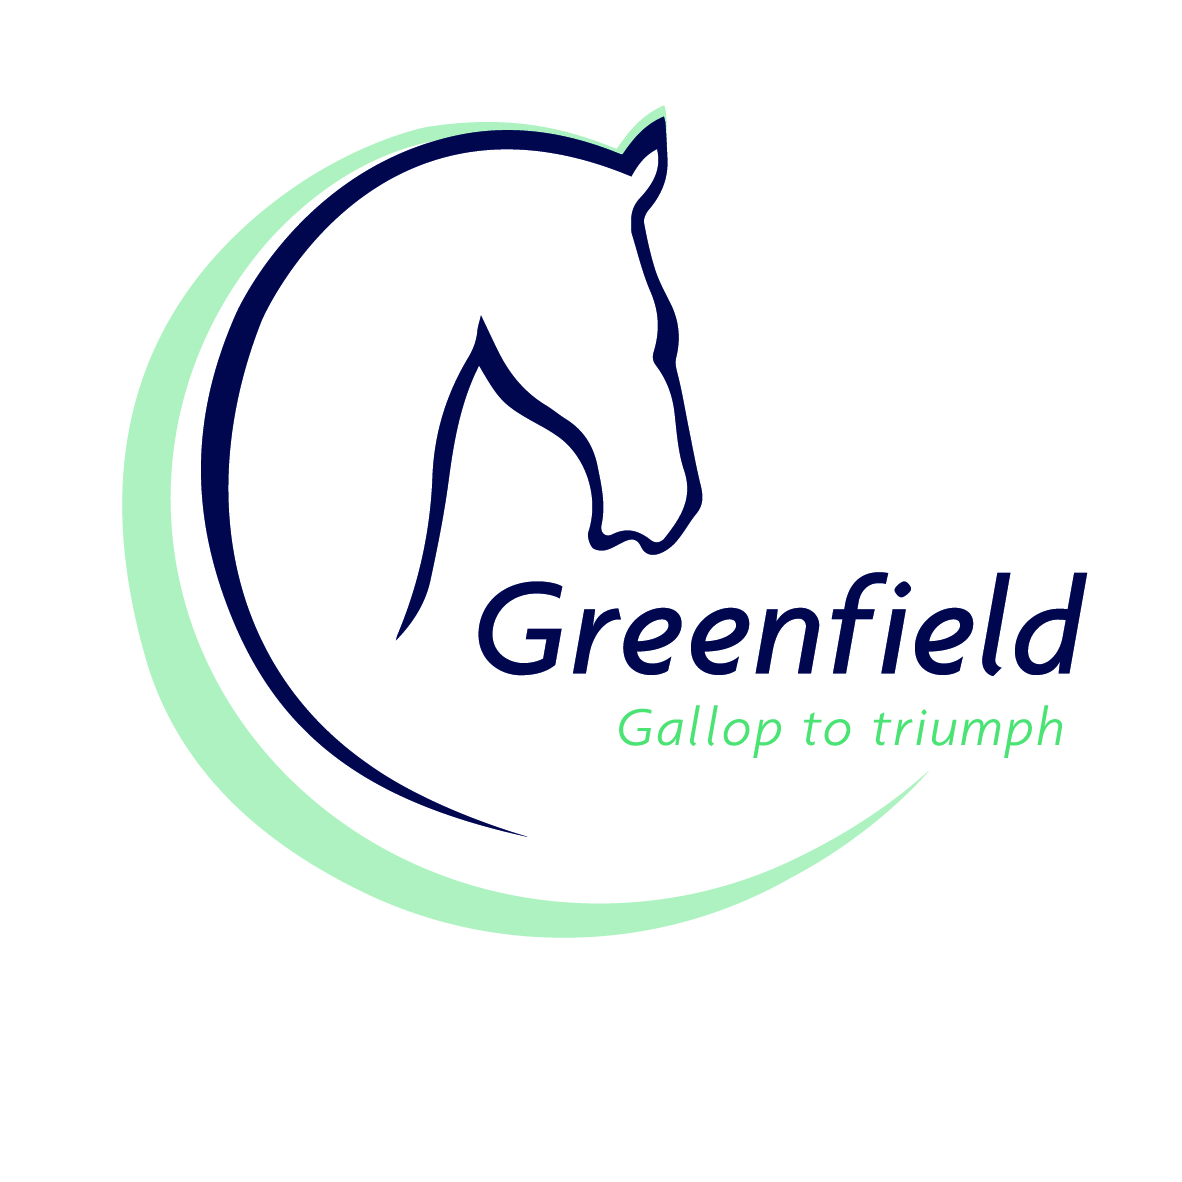 Greenfield verhuist vanaf 1 december naar Duffel